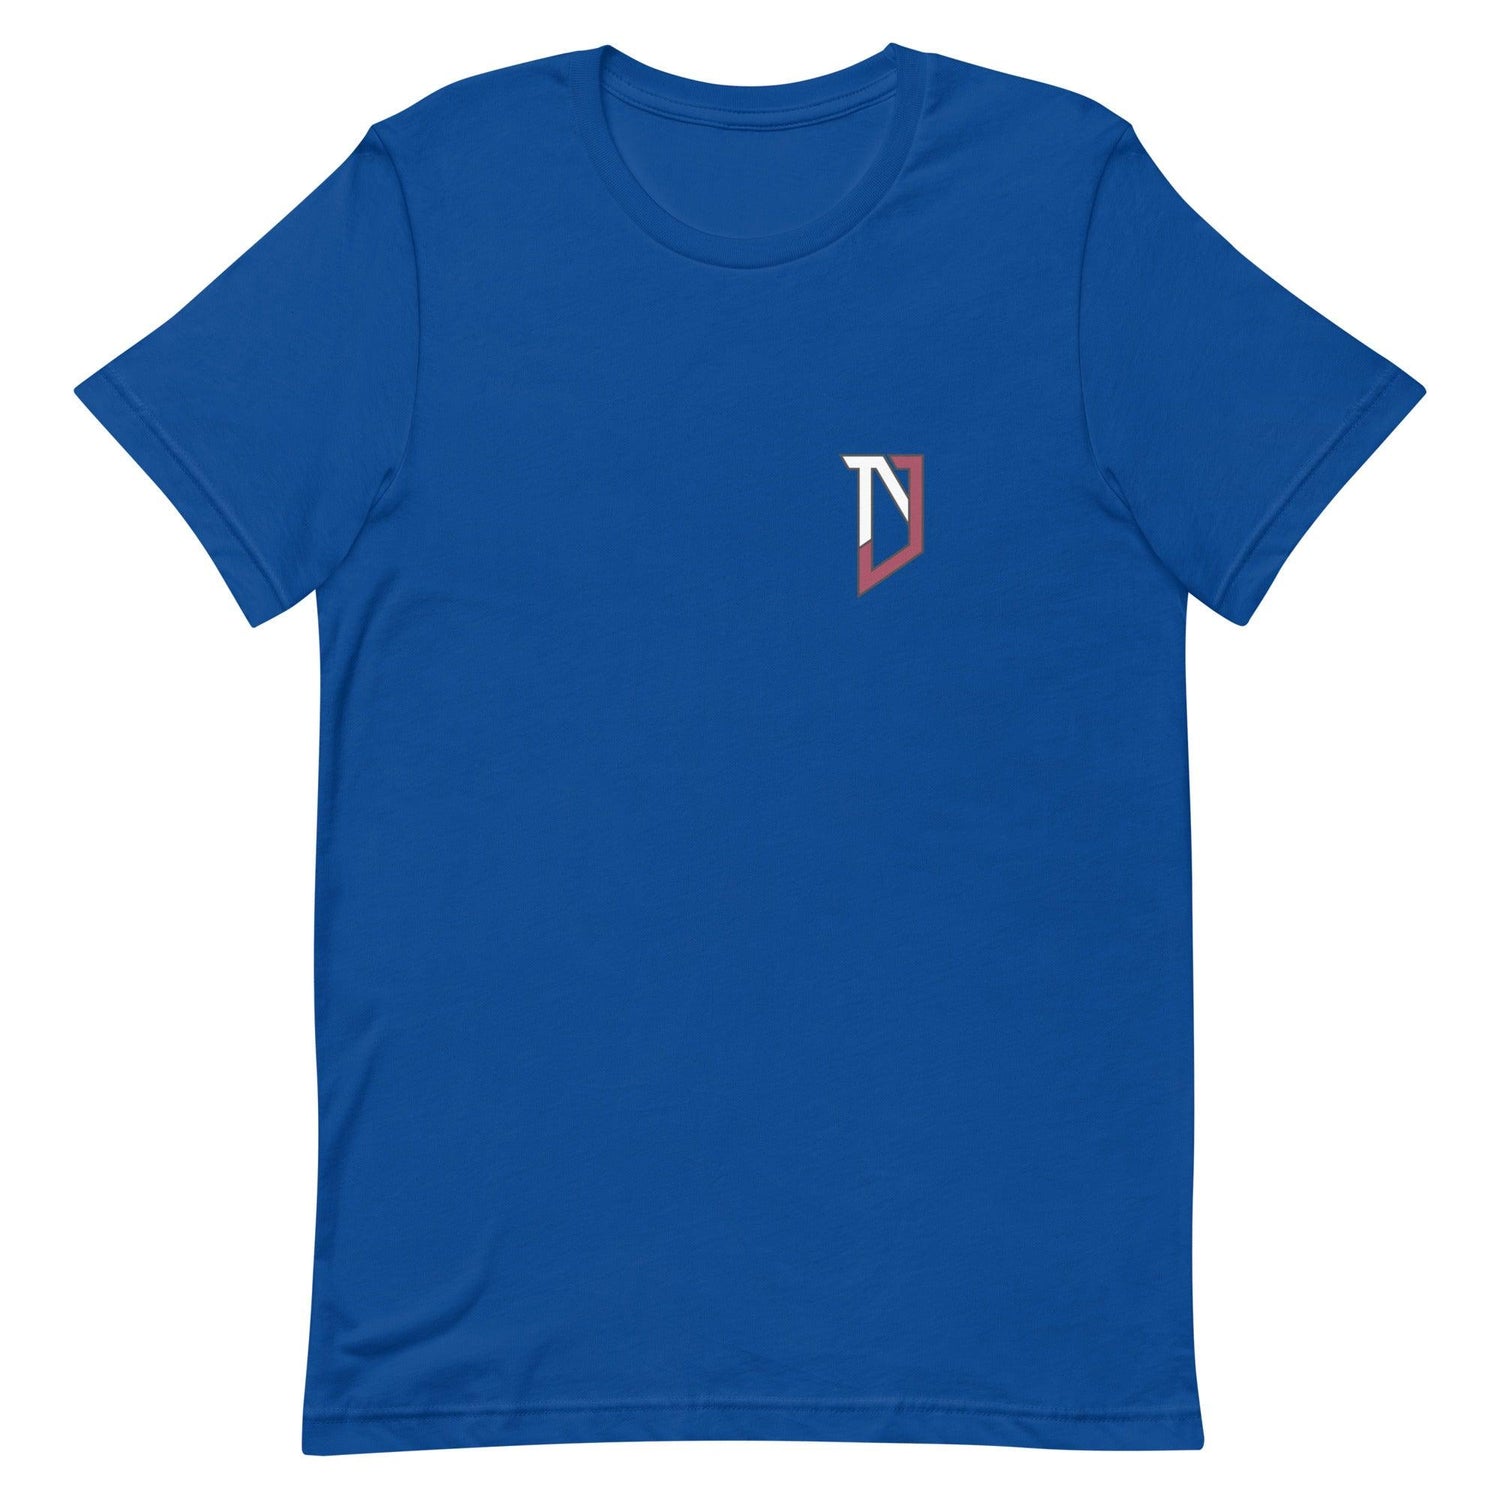 Nic Jones "NJ" t-shirt - Fan Arch